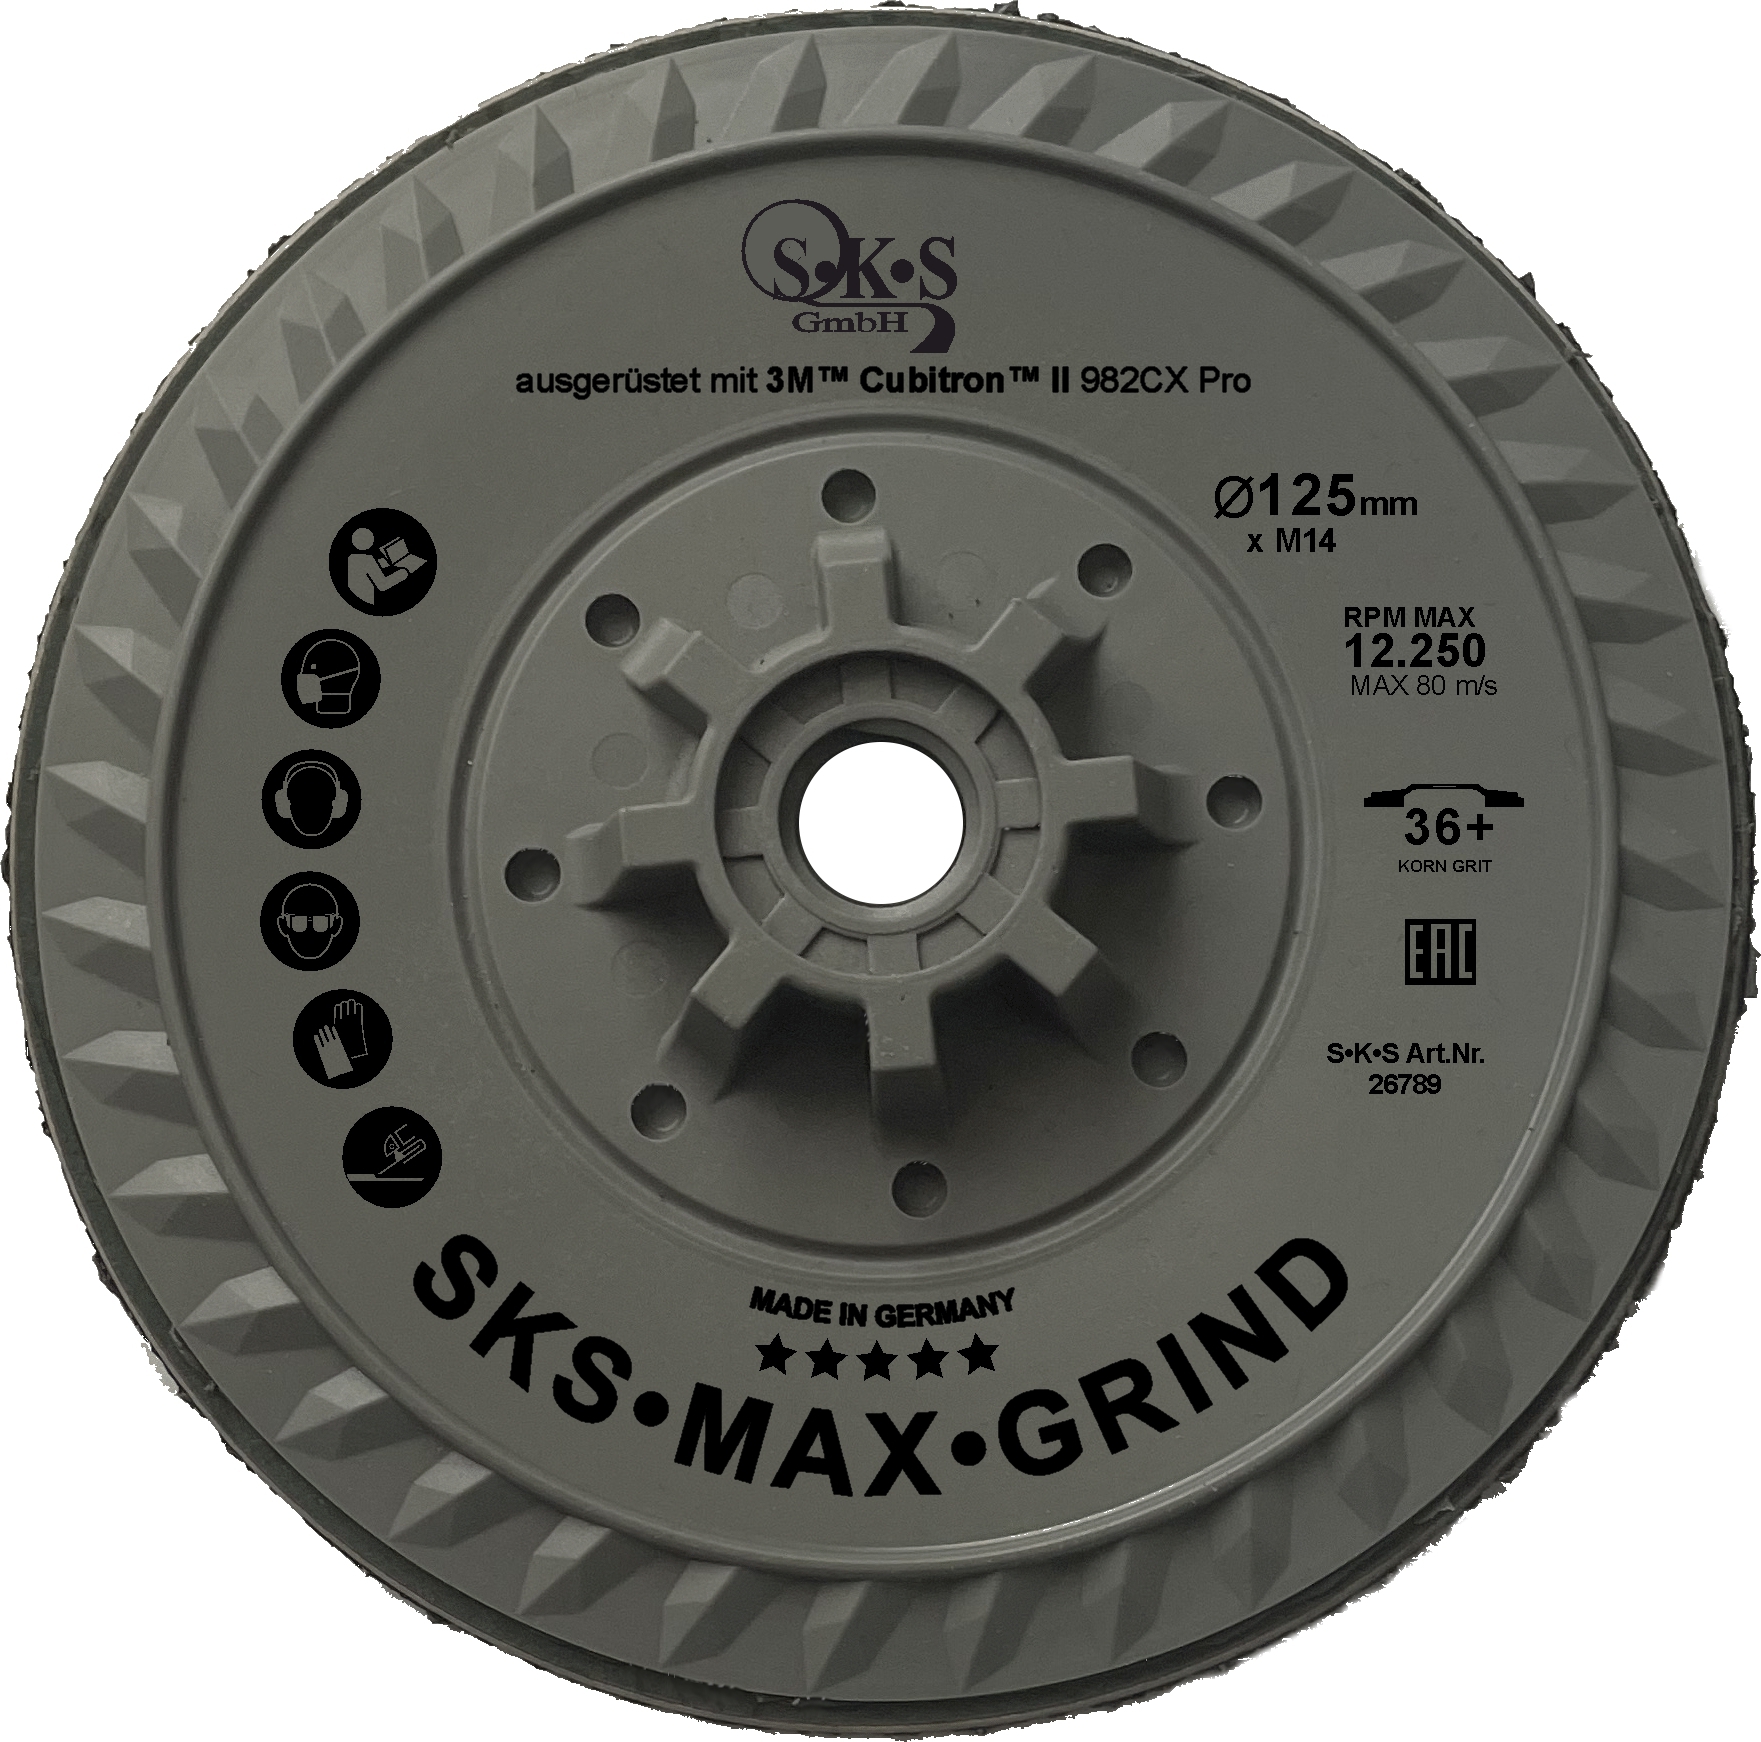 S•K•S Max Grind, 3M Cubitron II Fiberscheibe 982CX Pro, 125mm, Körnung 36+, mit Aufnahmen M14 Gewinde